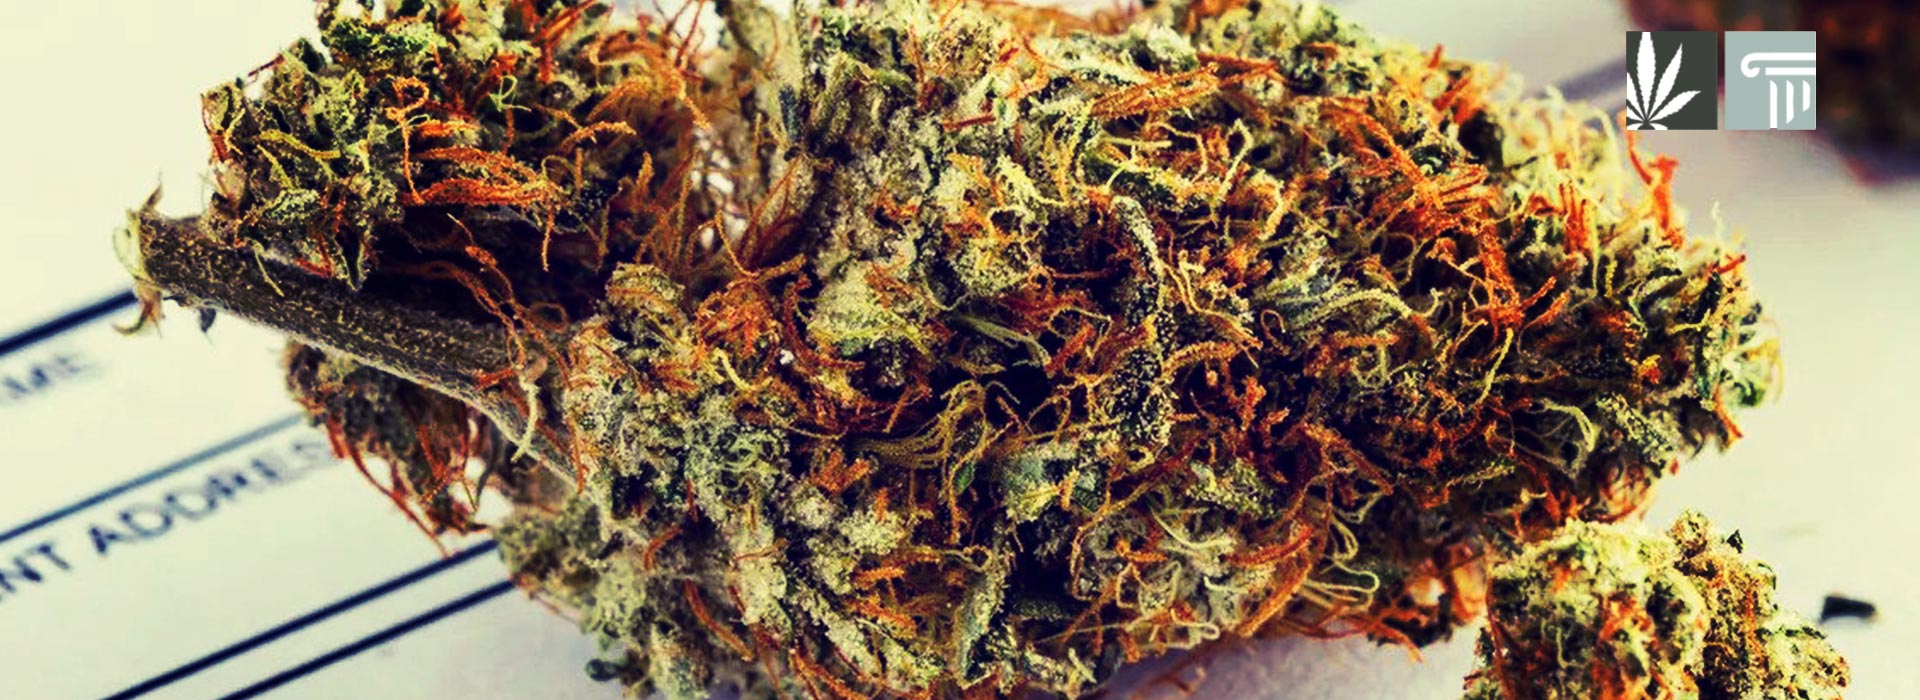 mississippi legalizes medical marijuana